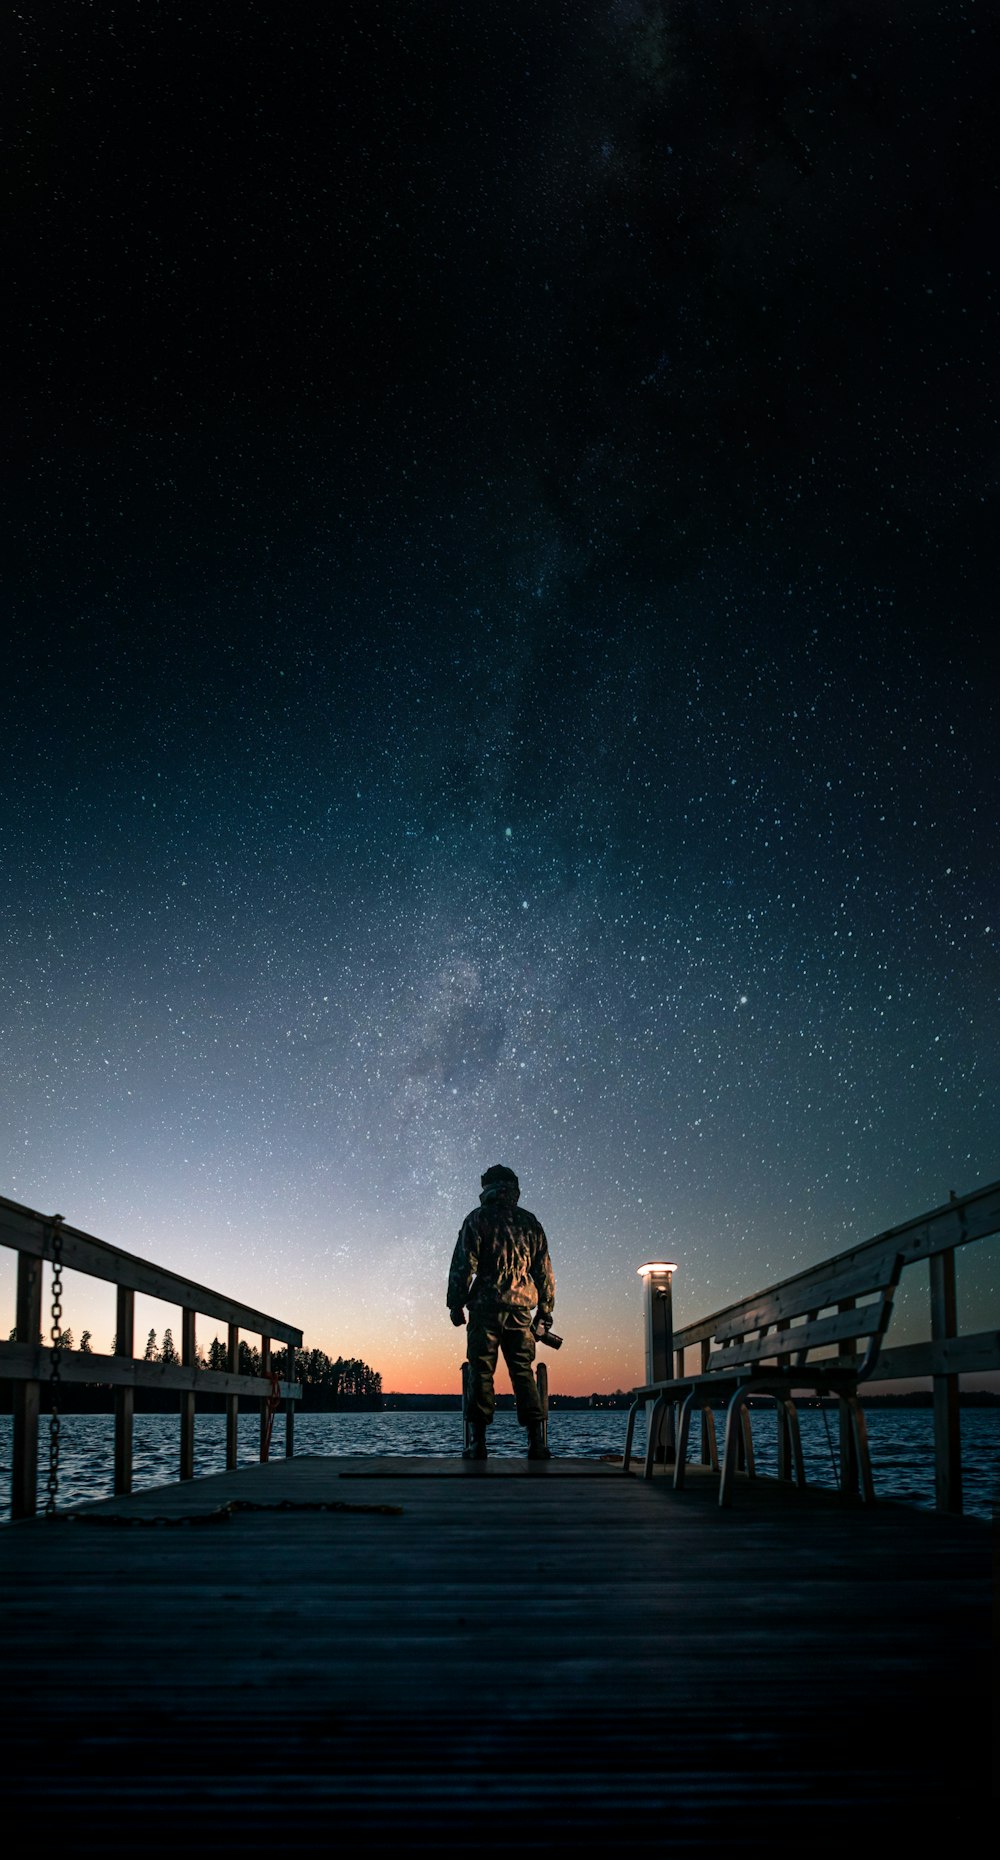 homme en veste noire debout sur un pont en bois marron sous la nuit étoilée